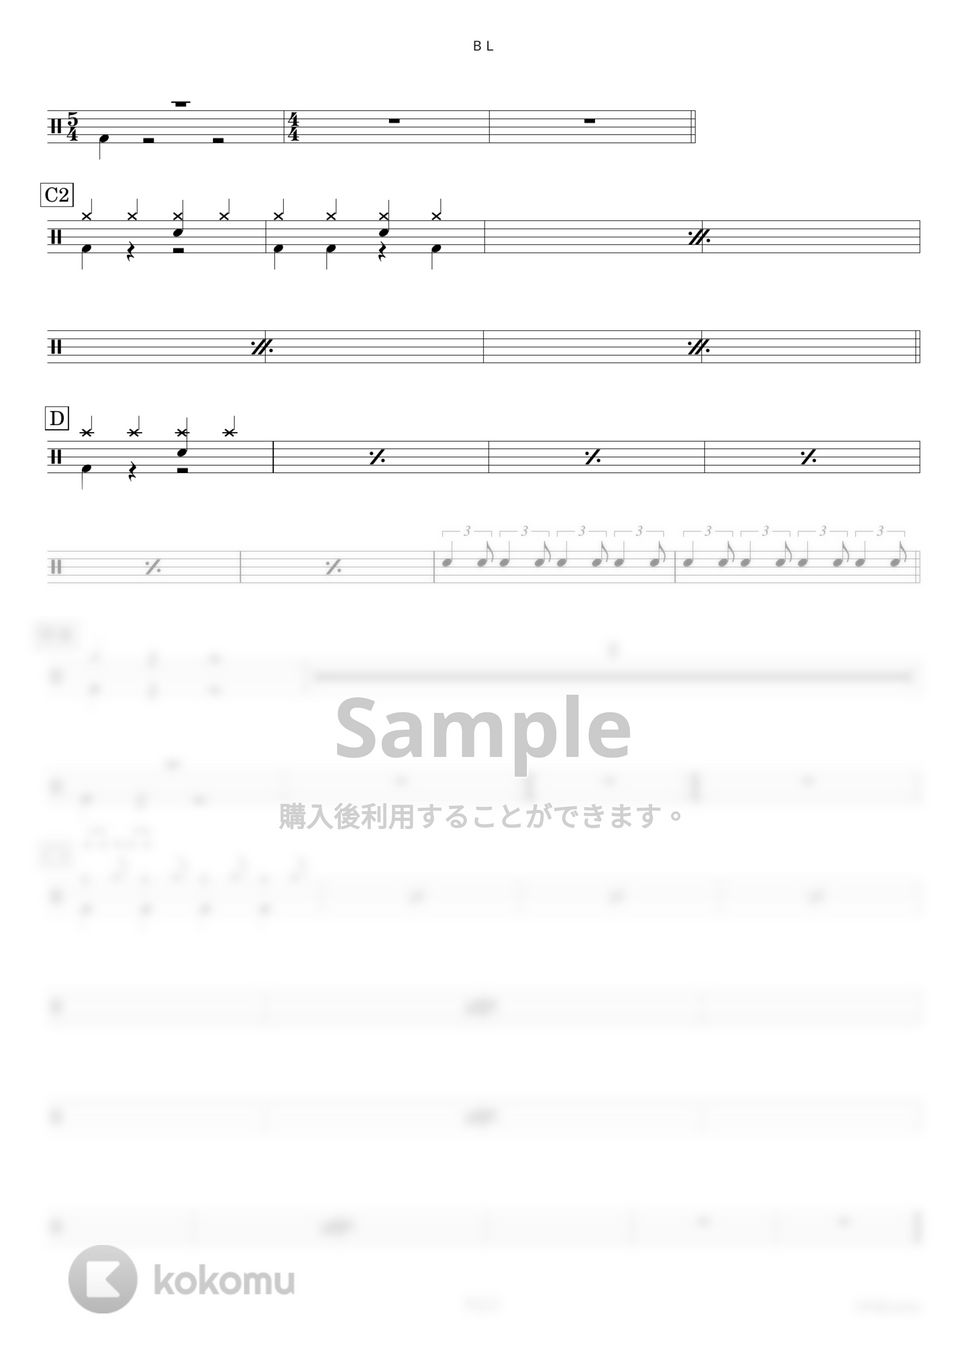 女王蜂 - ＢＬ 【ドラム楽譜〔初心者向け〕】.pdf by HYdrums